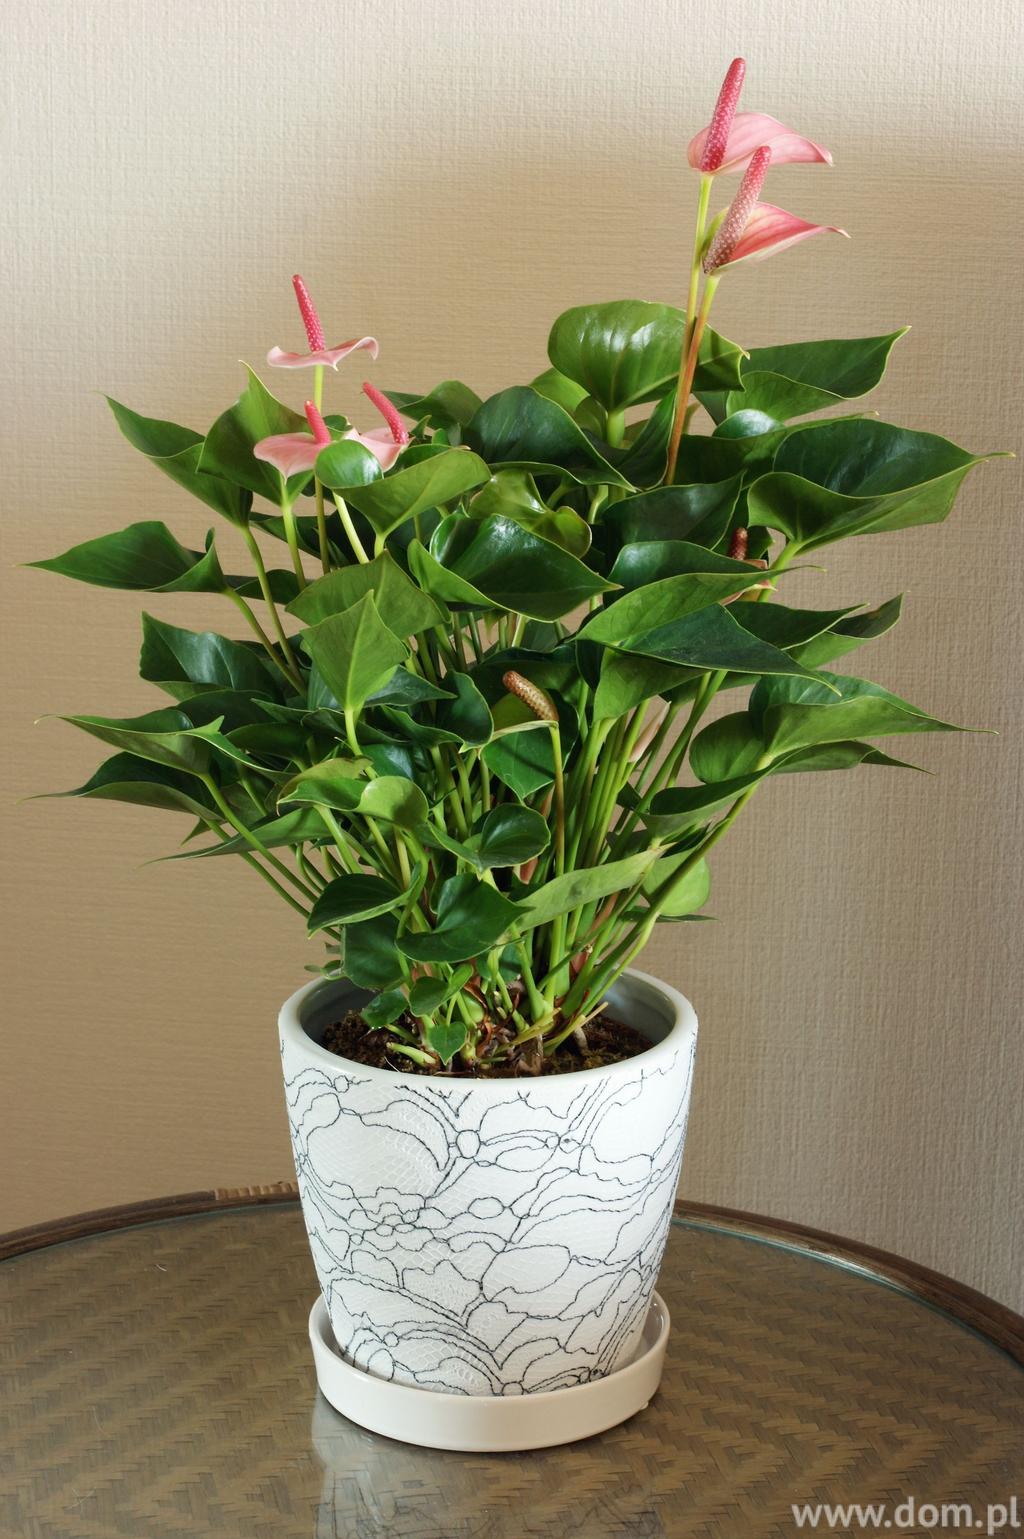 Anturium to bardzo piękna i elegancka roślina. Hodowana jest głównie na kwiaty cięte, jednak sporą popularność zyskała także jako roślina doniczkowa.